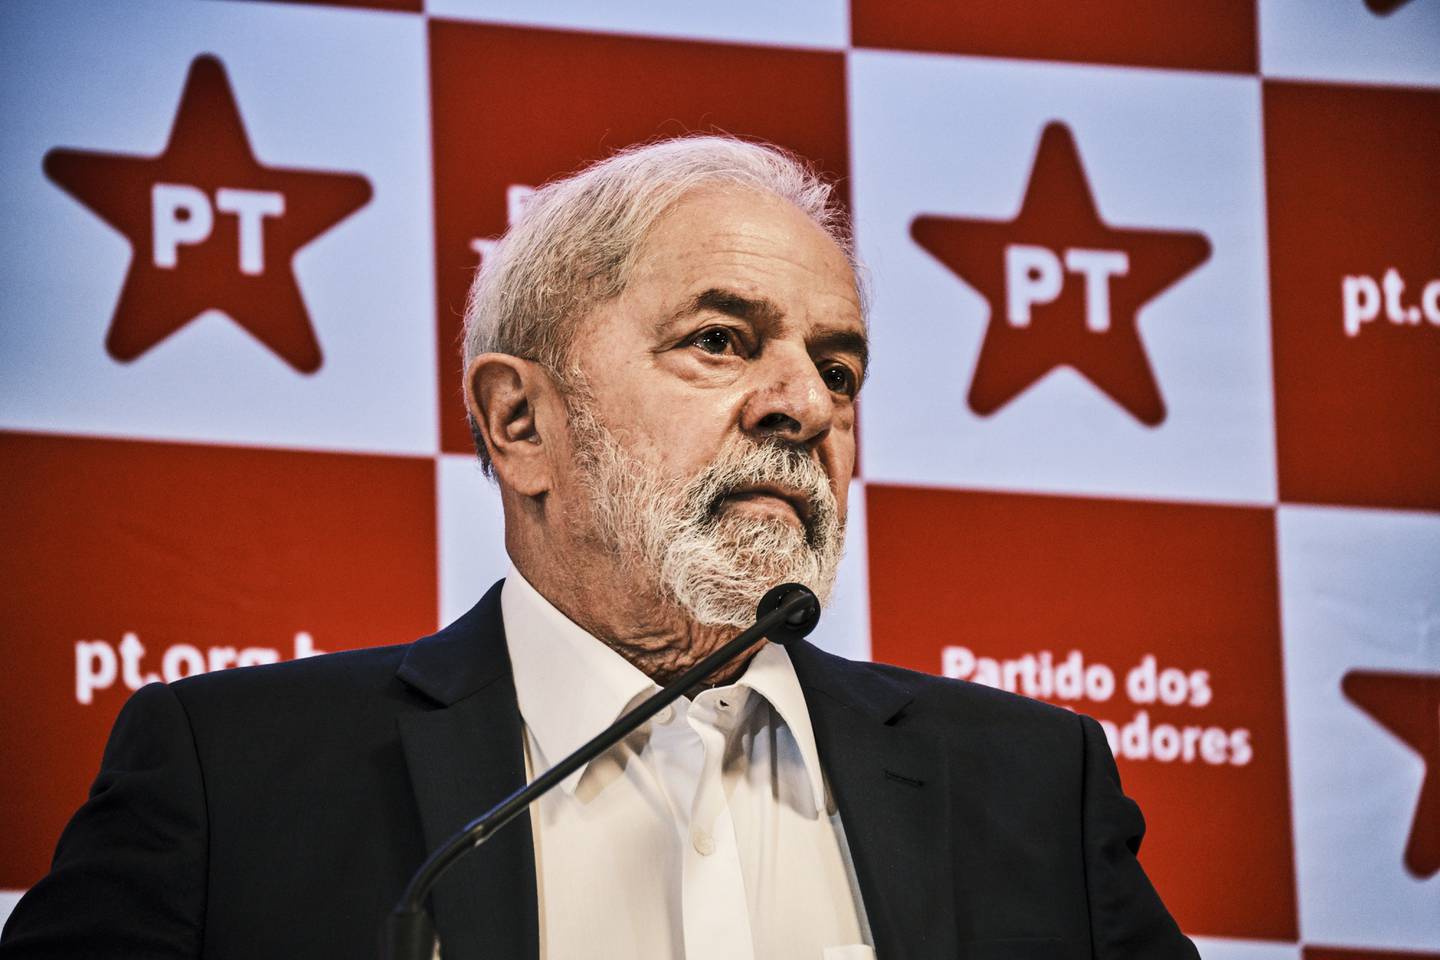 Lula ha dicho durante la campaña presidencial que, de ganar, sino impulsarán la creación de una moneda única para la región. Fotógrafo: Gustavo Minas/Bloombergdfd